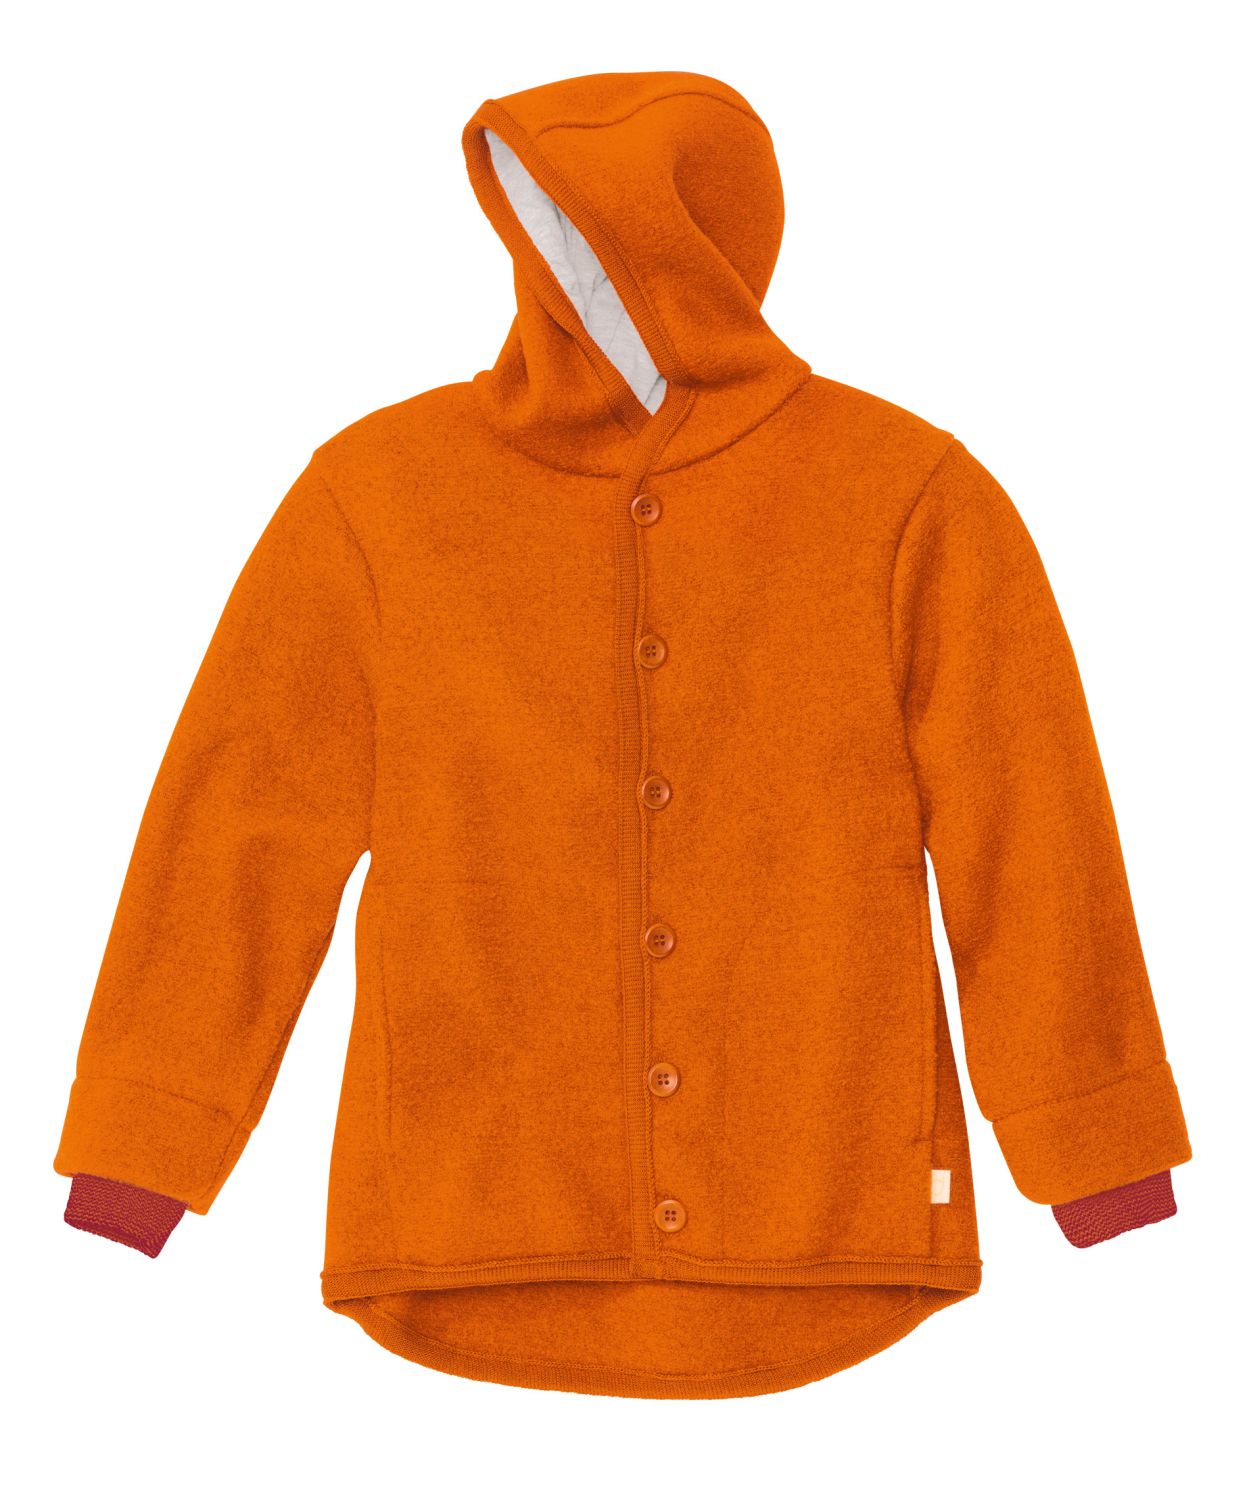 Disana Boiled Wool Jacket (Size: 86/92 / Color: Orange)